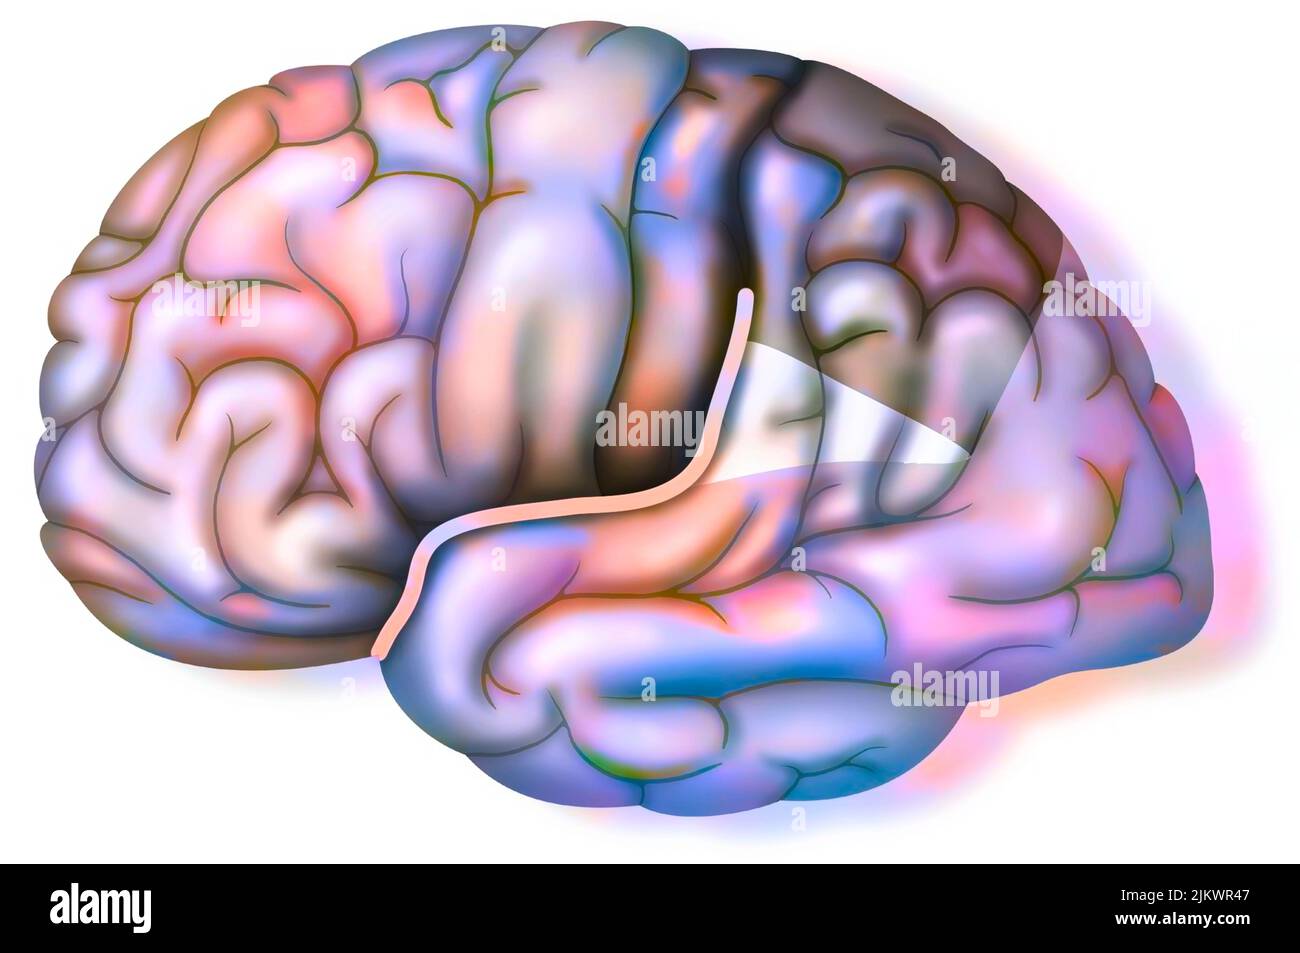 Besonderheit des Gehirns von Einstein, das eine Spaltung von Sylvius darstellt, die nach oben geht. Stockfoto